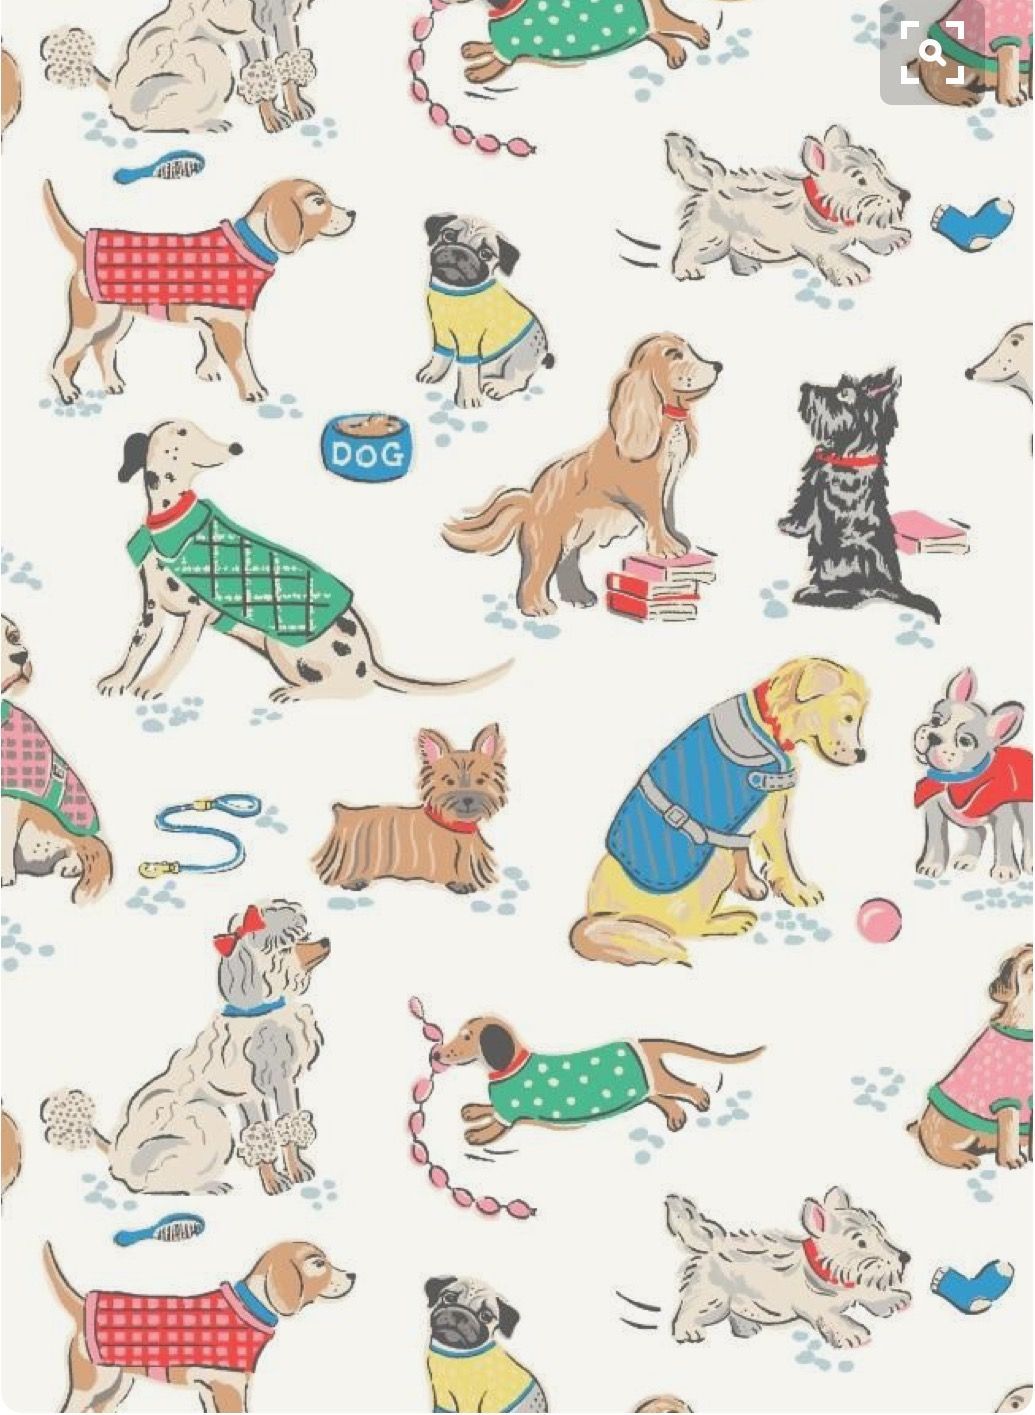 Dog wallpaper, Dog art, Cute wallpaper.com